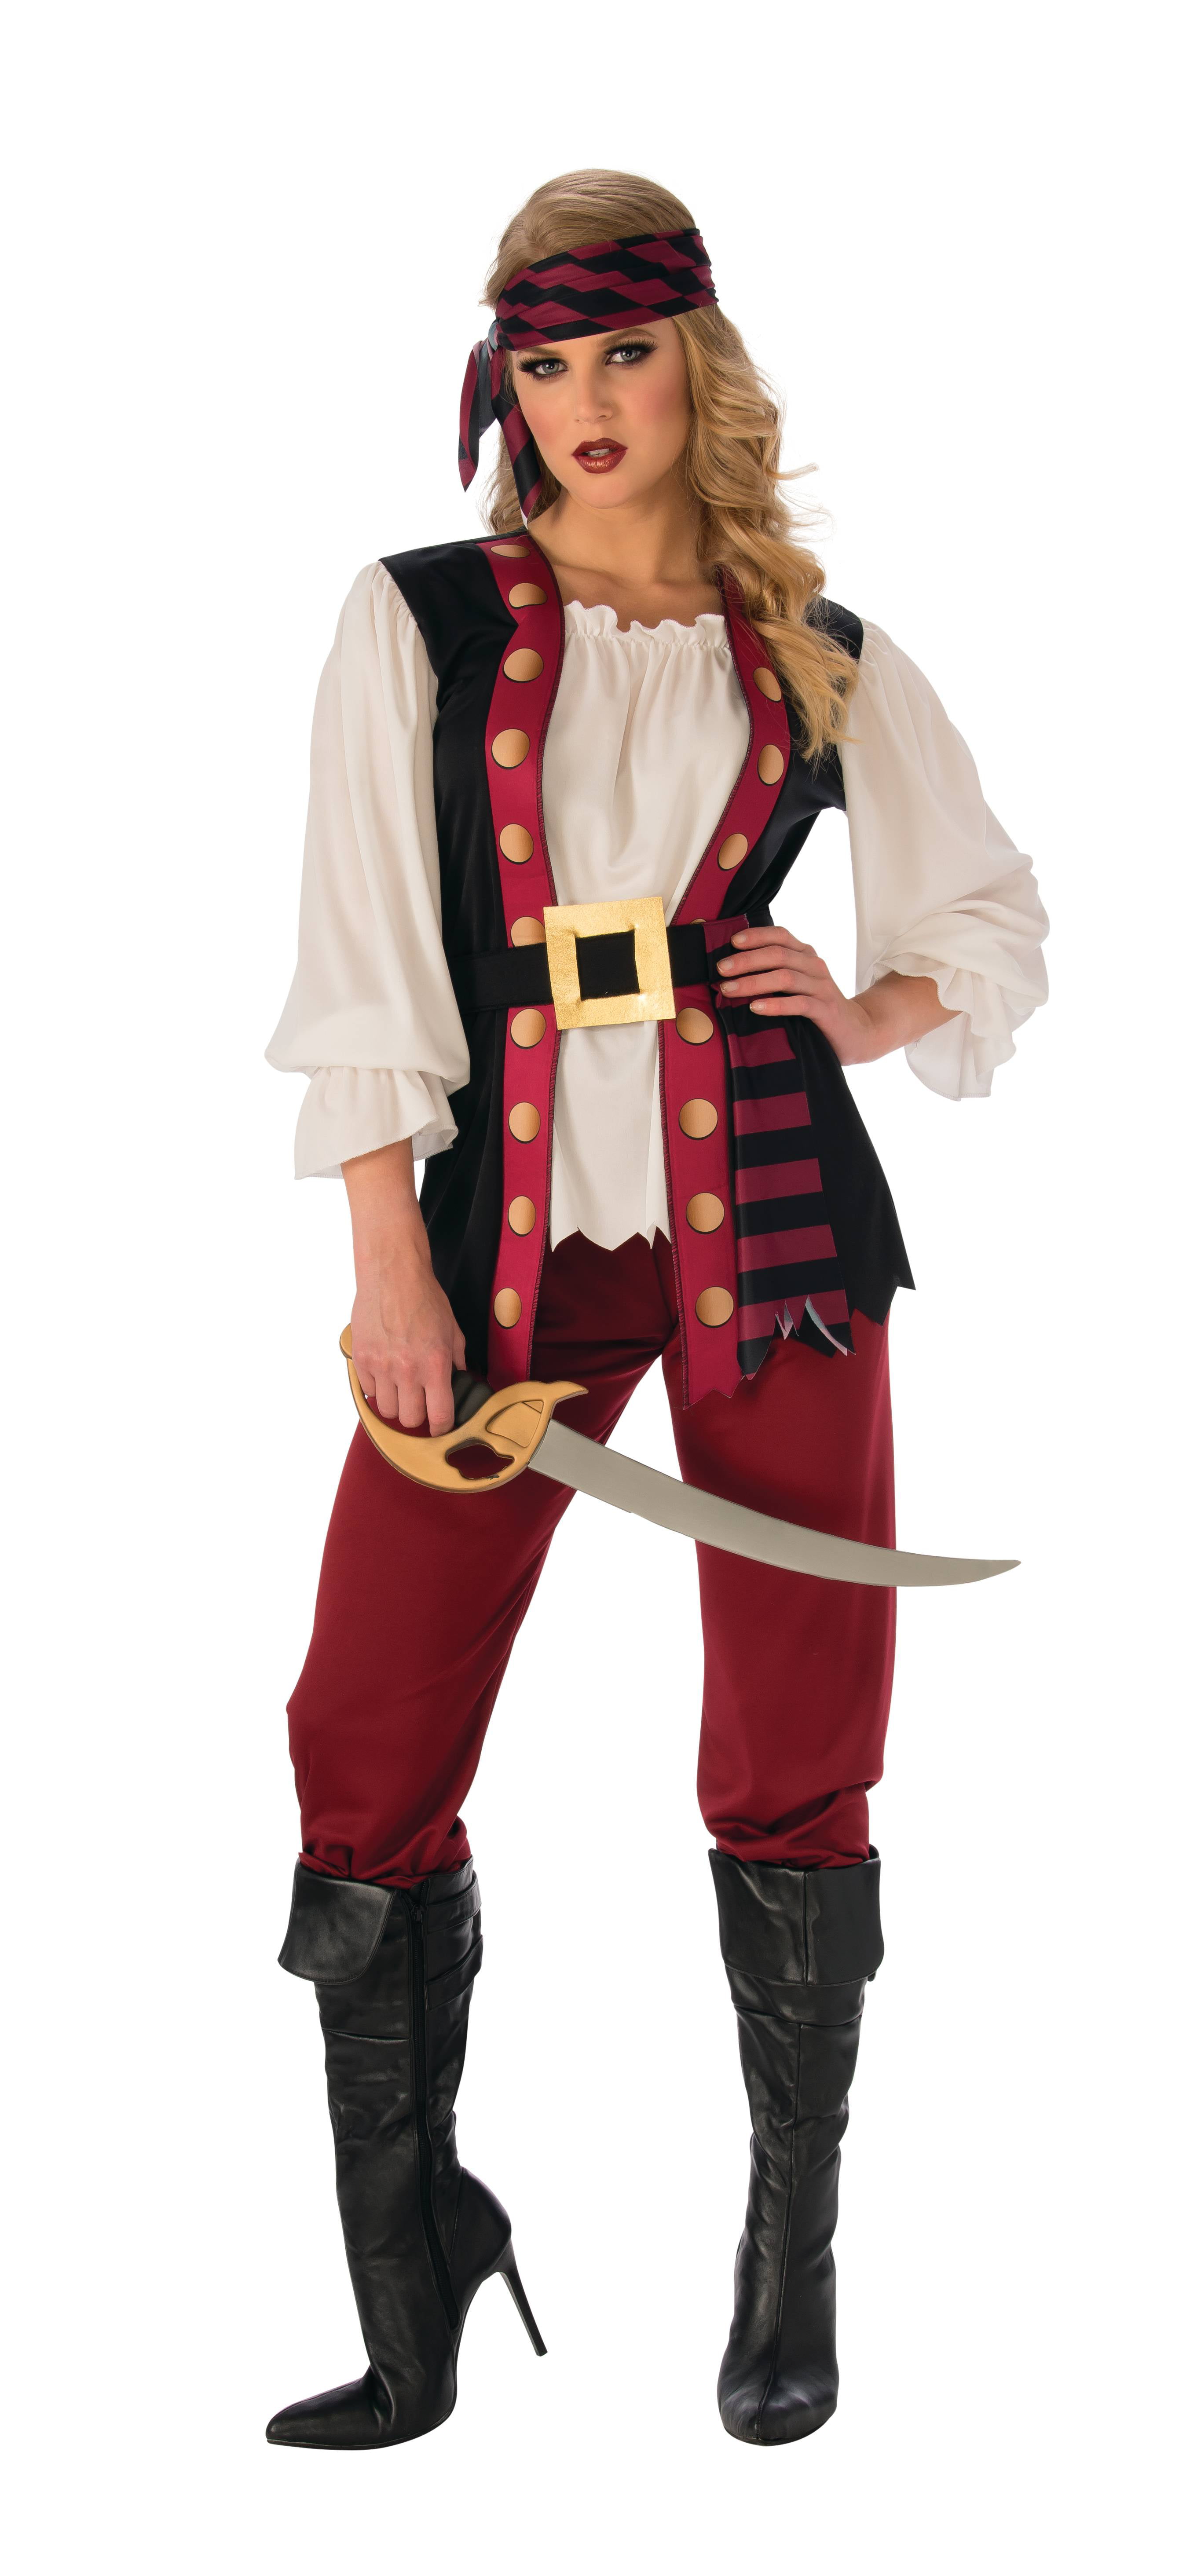 lus kiem Mijlpaal Women Pirate Halloween Costume Large - Walmart.com